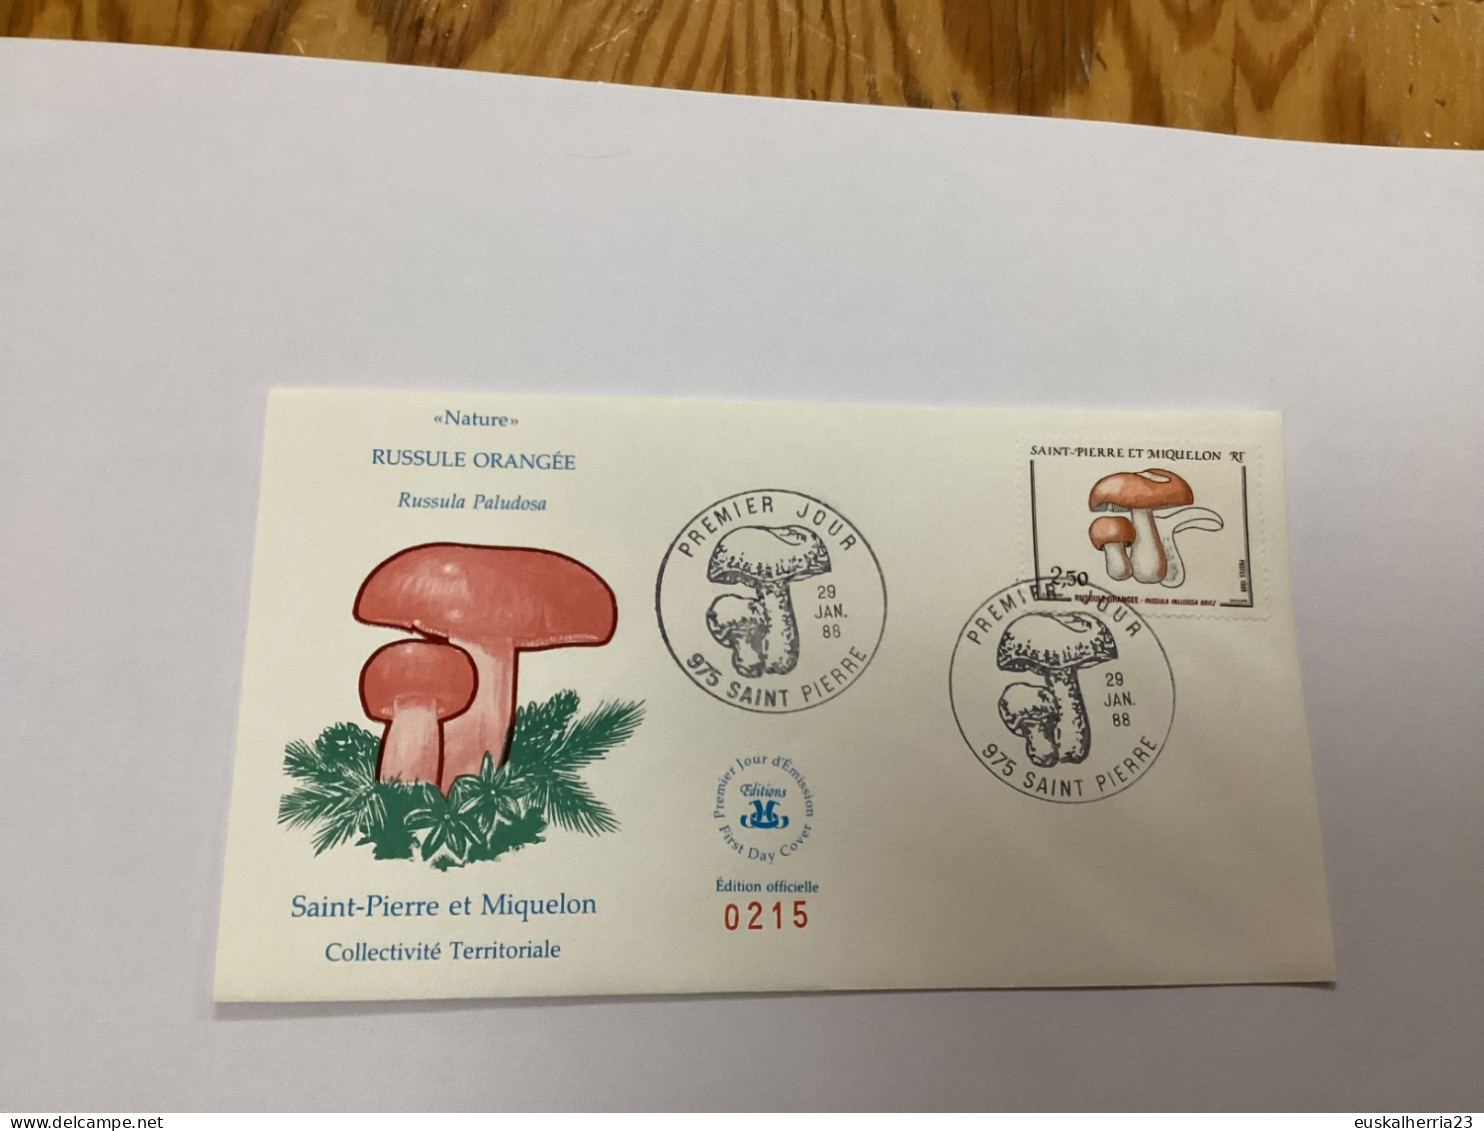 Enveloppe 1er Jour Saint-pierre Et Miquelon Russule Orangée 1988 - Gebraucht